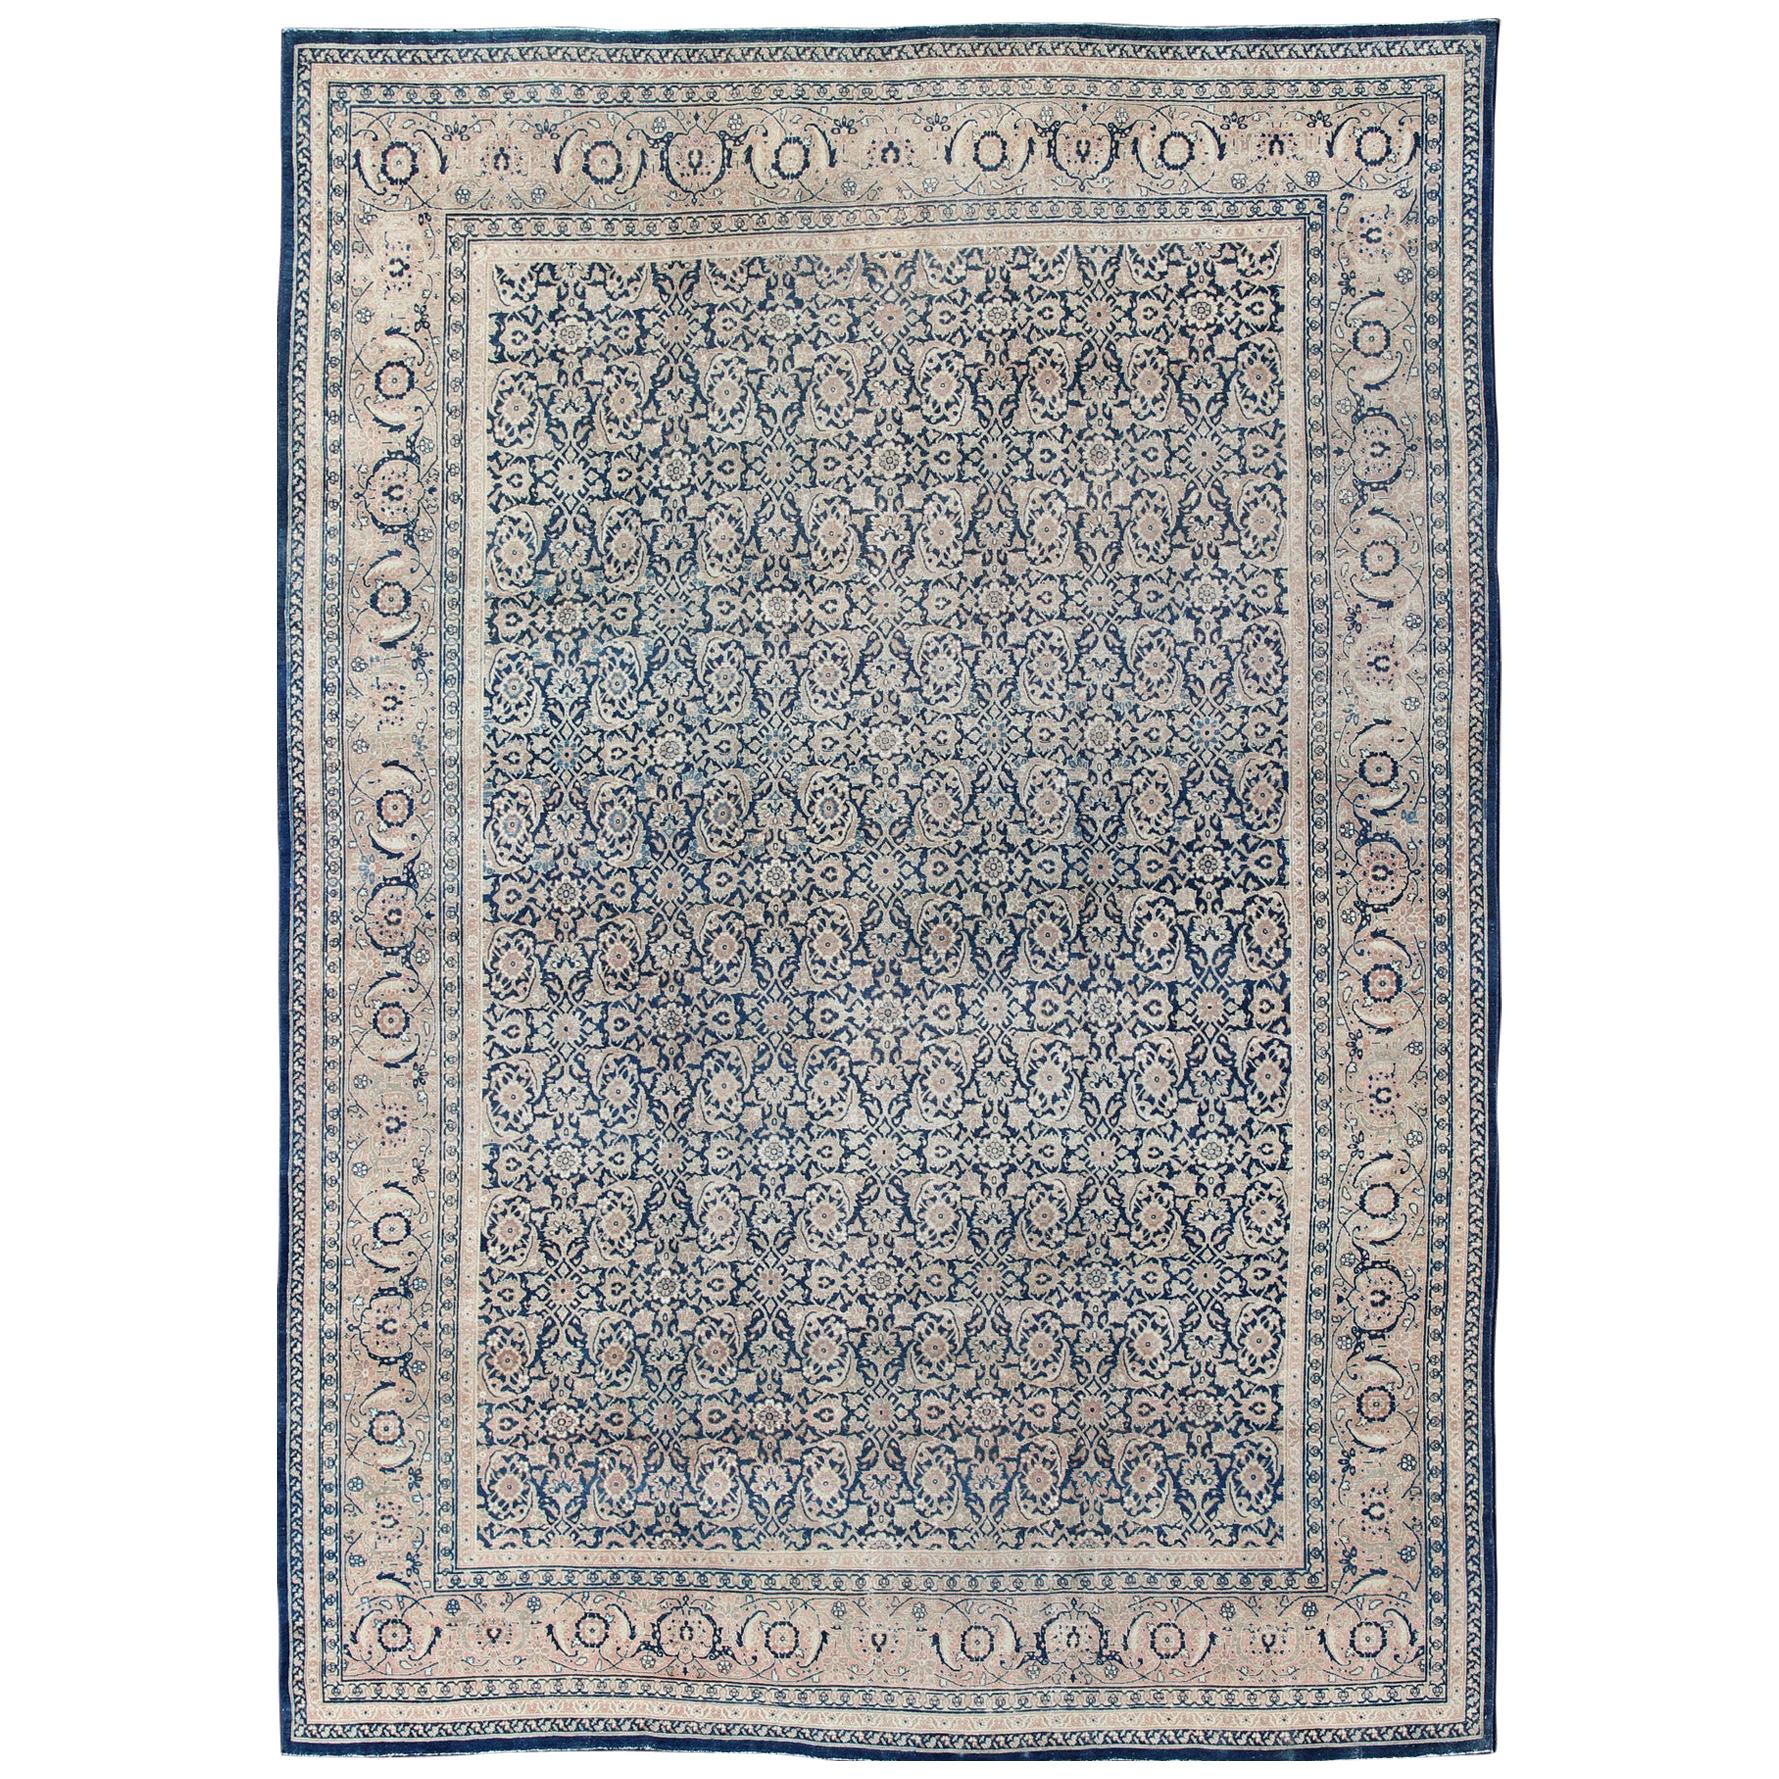 Tapis persan ancien de Tabriz avec motif géométrique Herati dans des tons bleus foncés